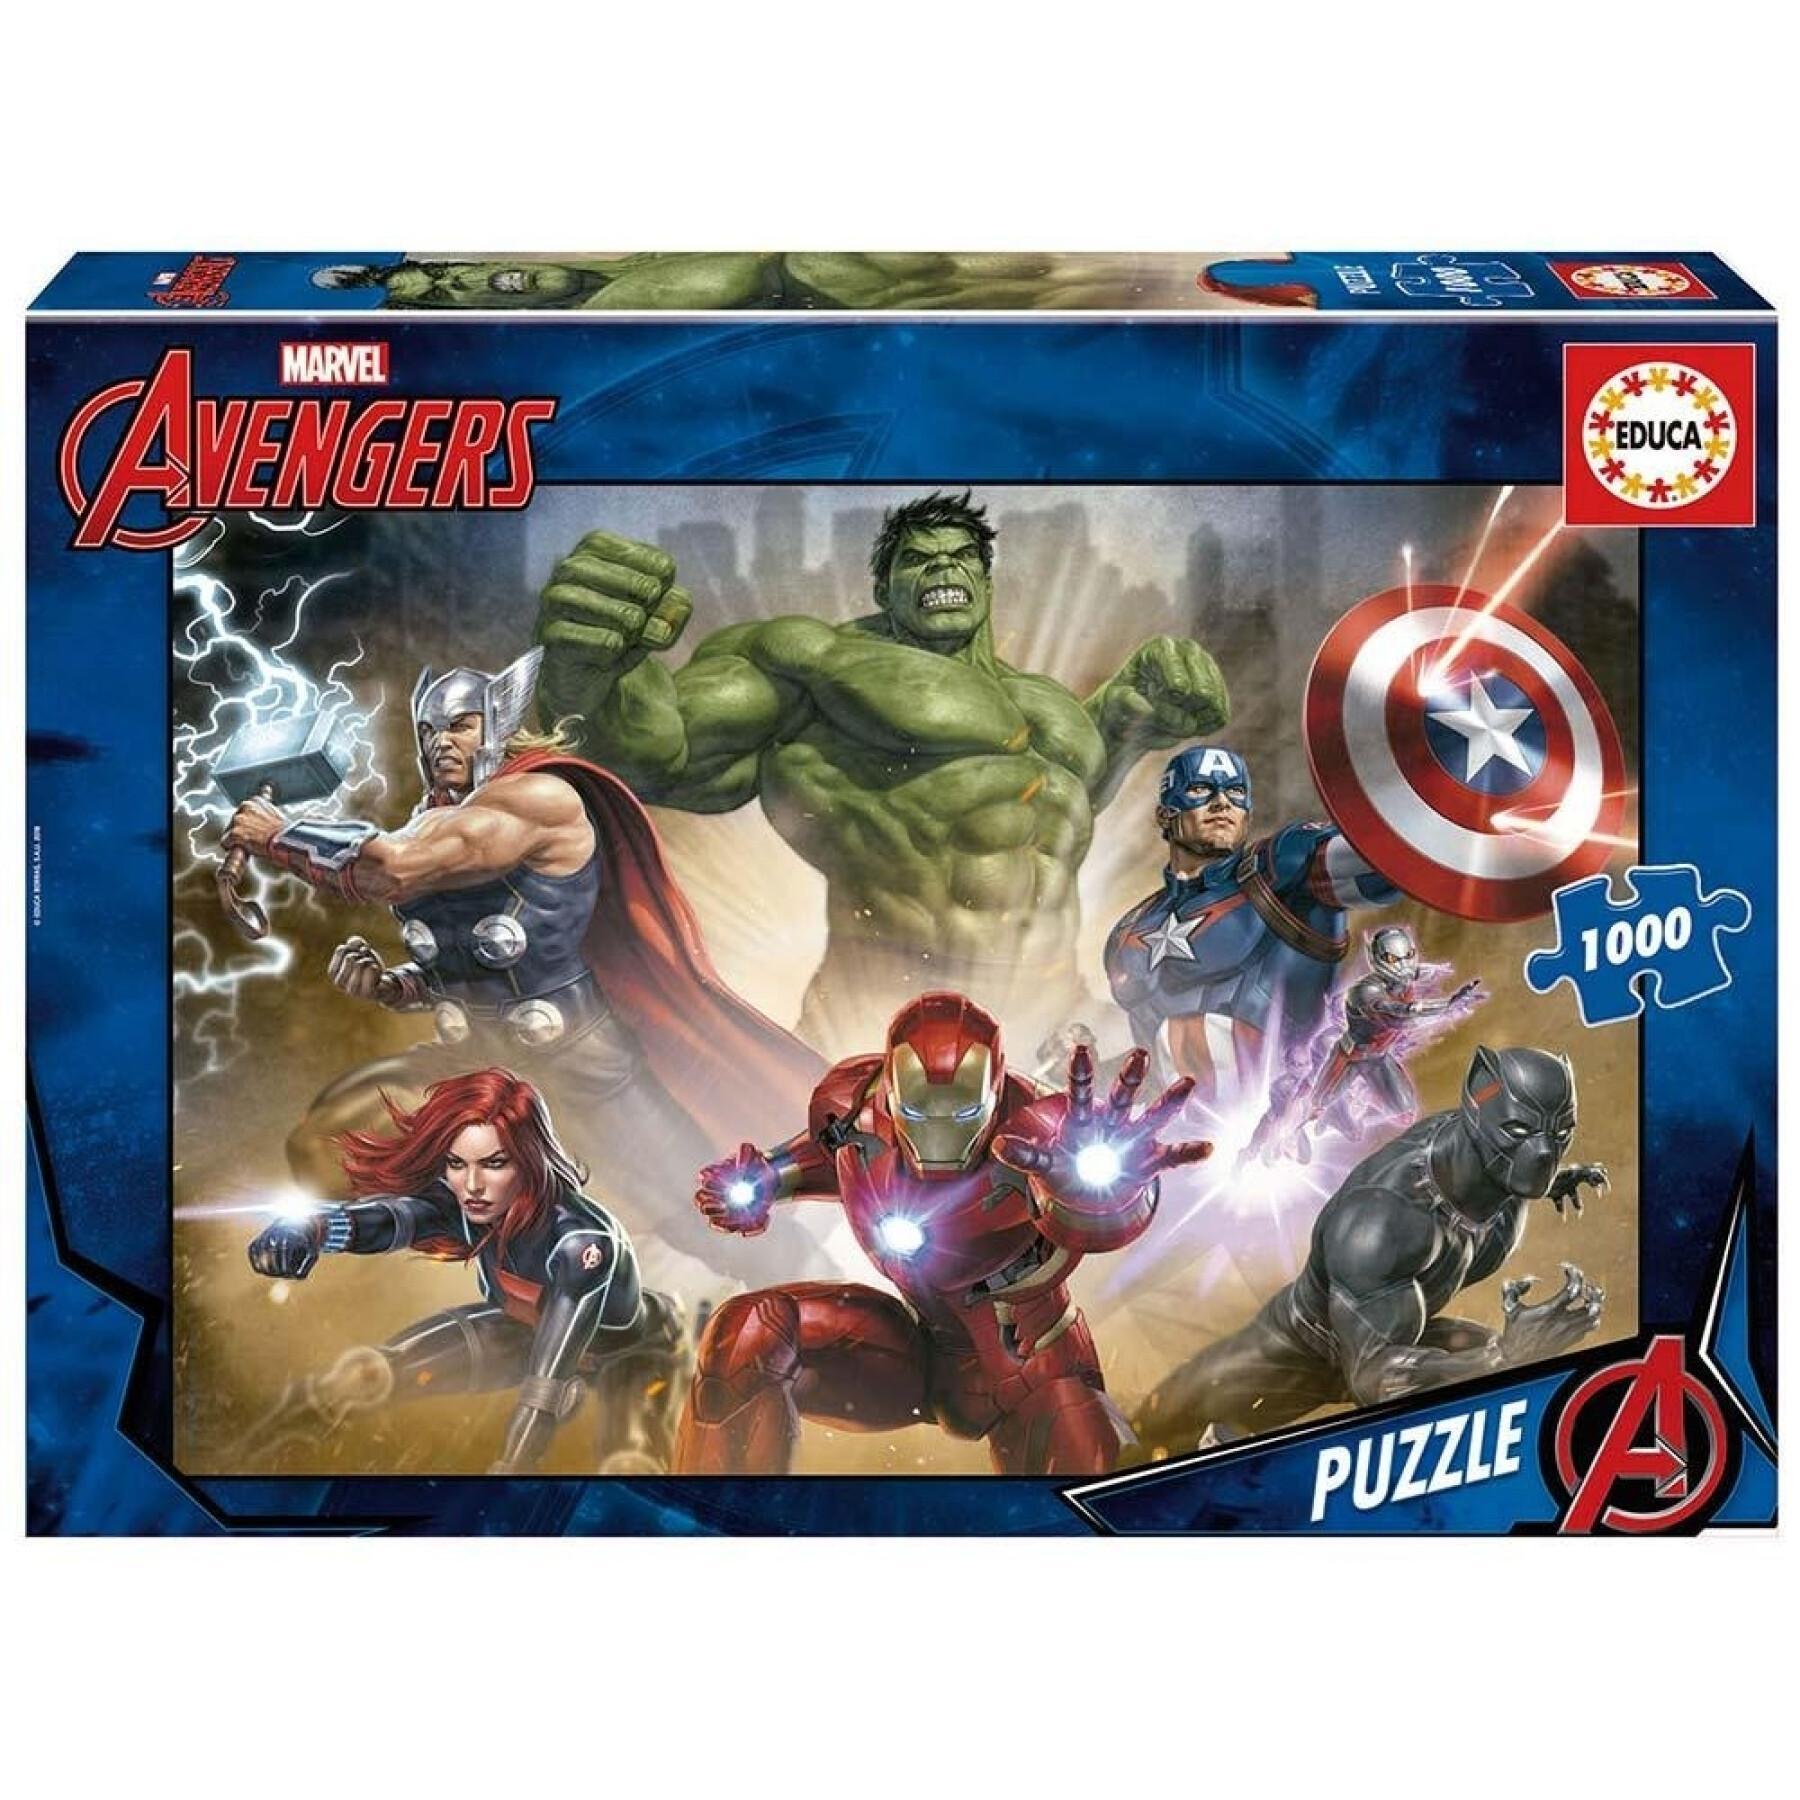 Puzzle de 1000 peças Avengers